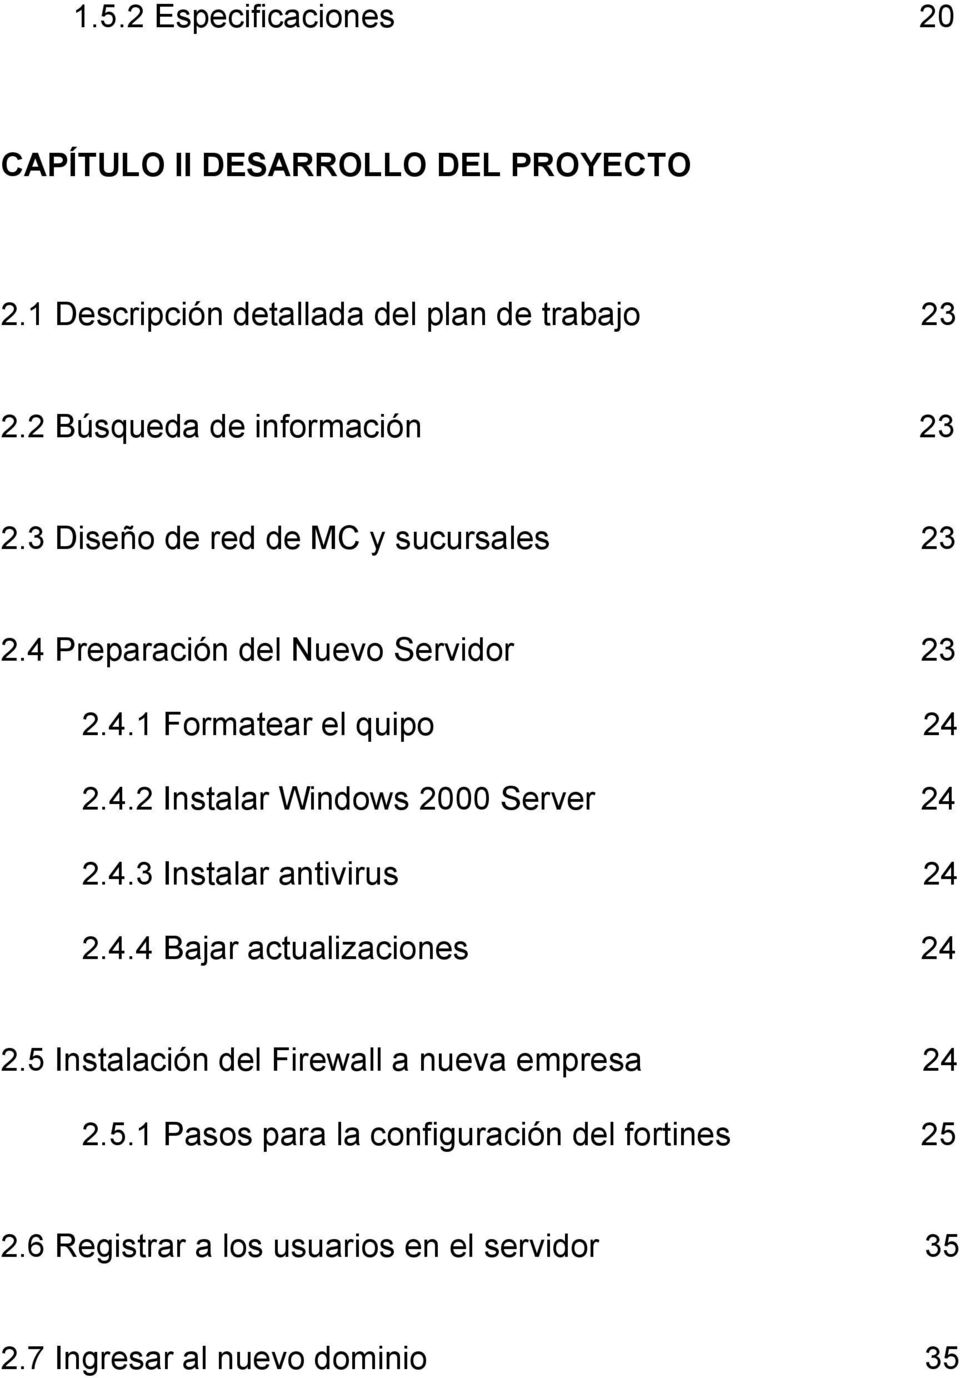 4.2 Instalar Windows 2000 Server 24 2.4.3 Instalar antivirus 24 2.4.4 Bajar actualizaciones 24 2.